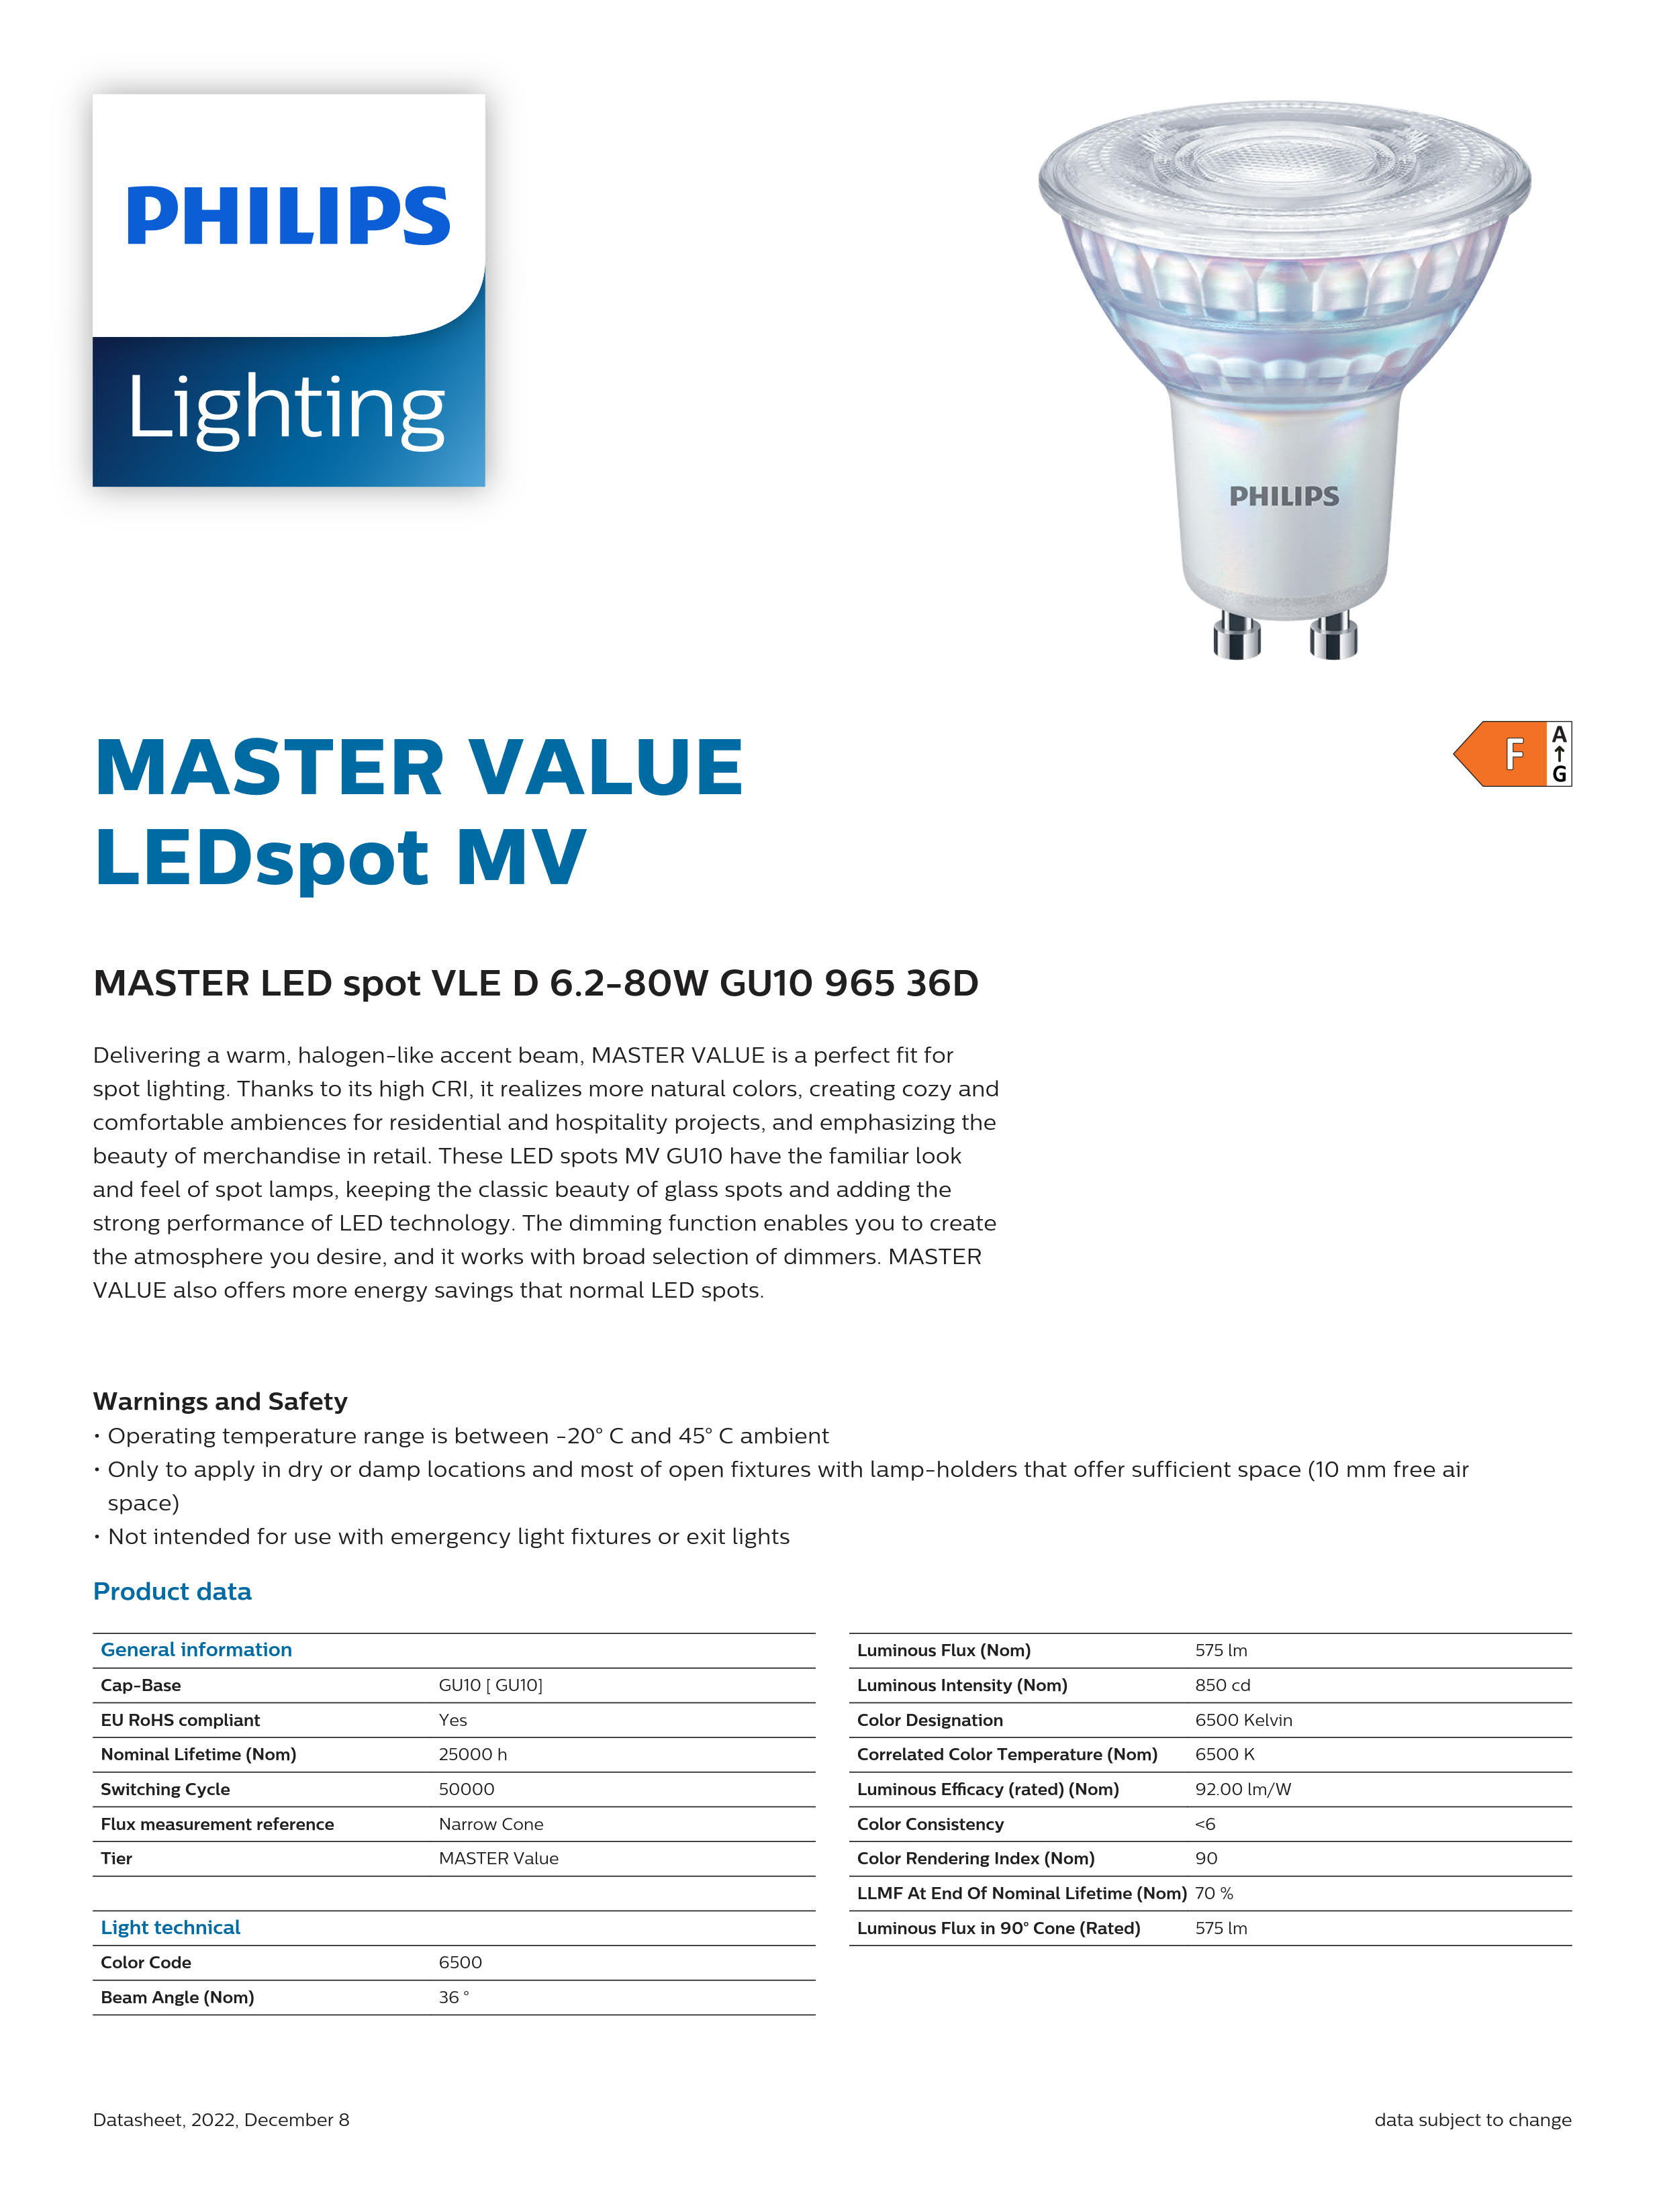 PHILIPS MASTER LED spot VLE D 6.2-80W GU10 965 36D 929002209902